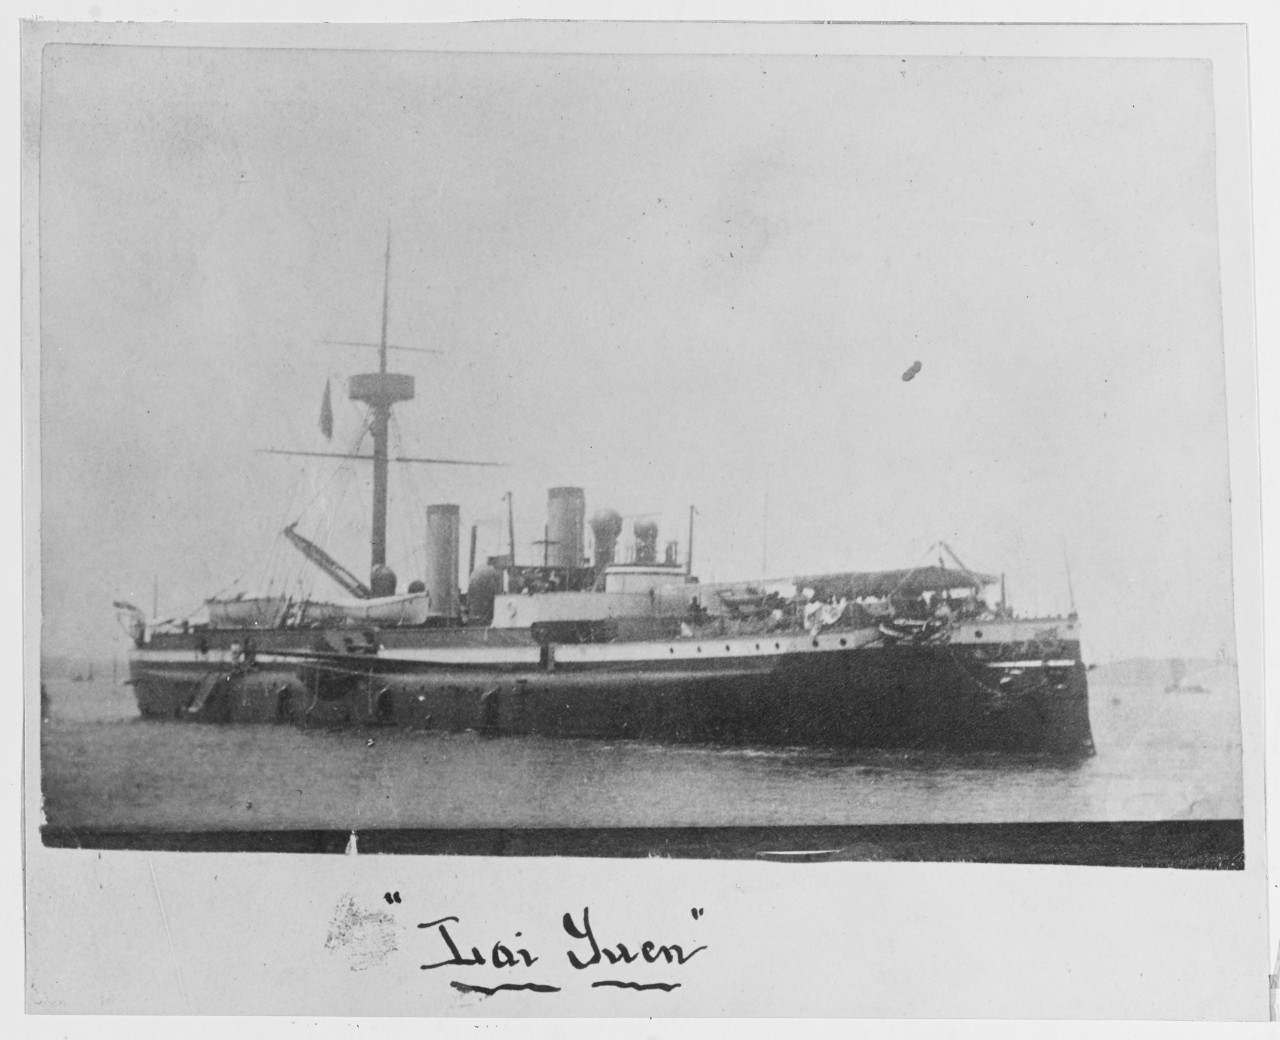 Chinese warship LAI-YUEN